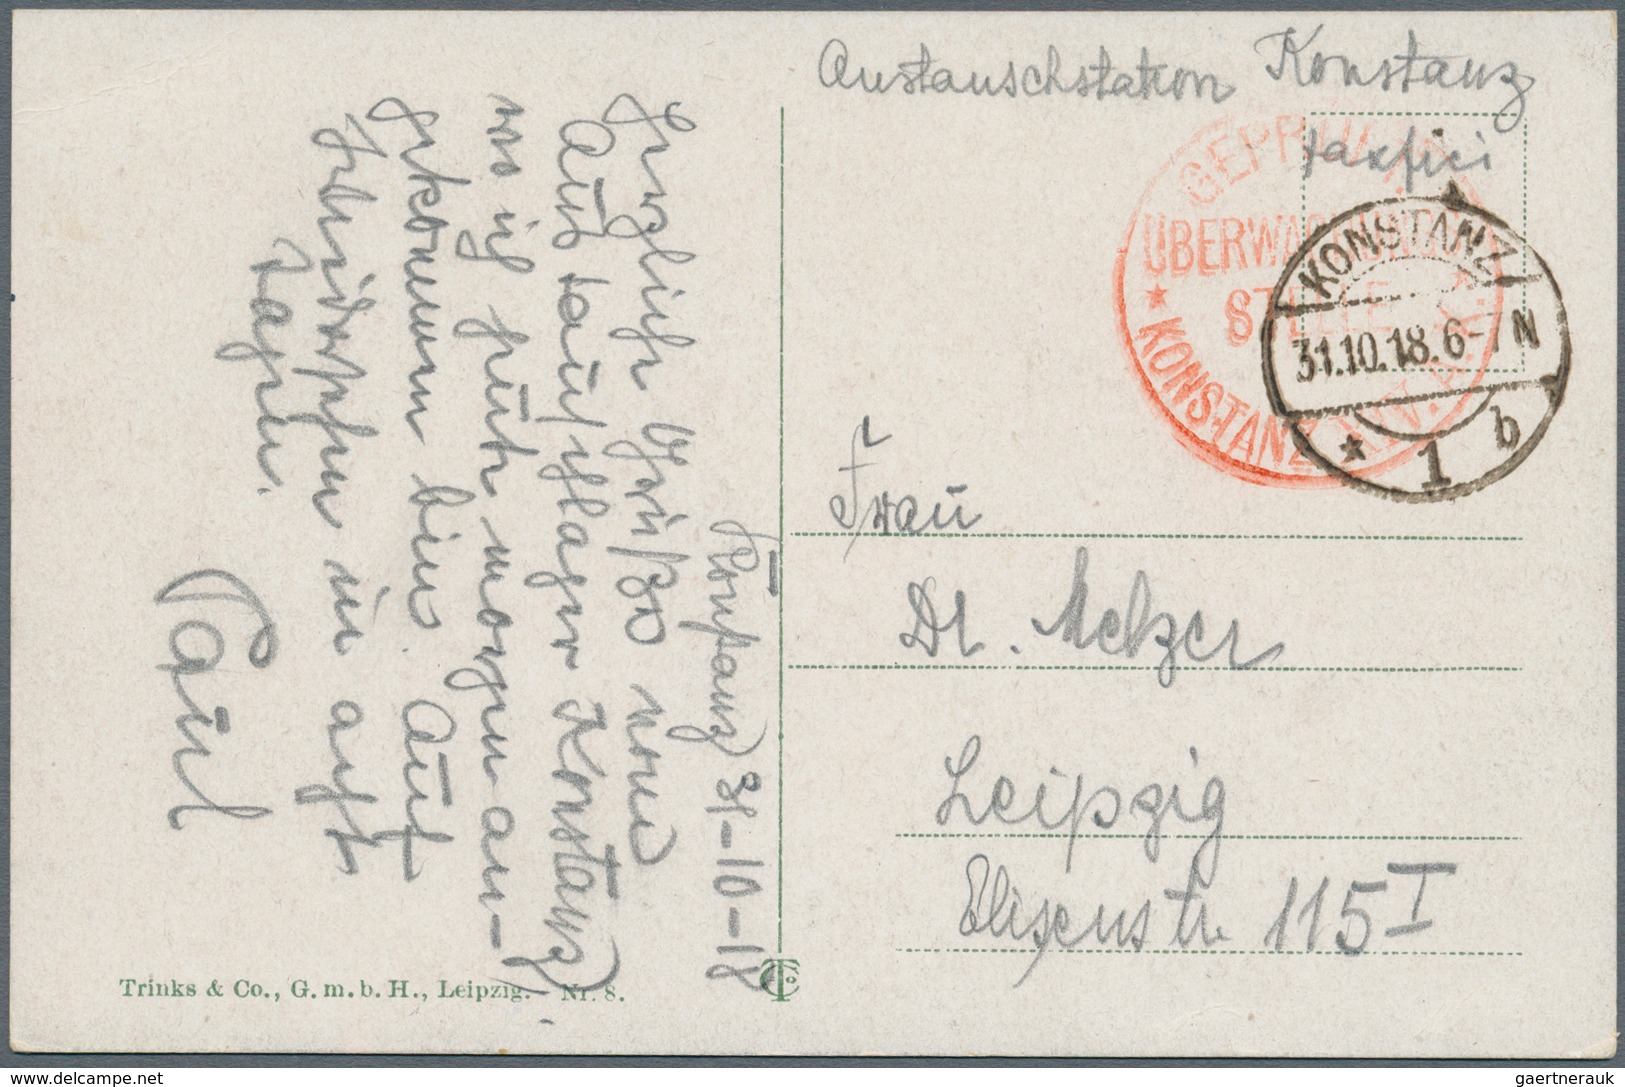 Feldpost 1. Weltkrieg: 1914/1918, vielfältiger Posten von ca. 120 Feldpostbriefen/-karten mit vielen